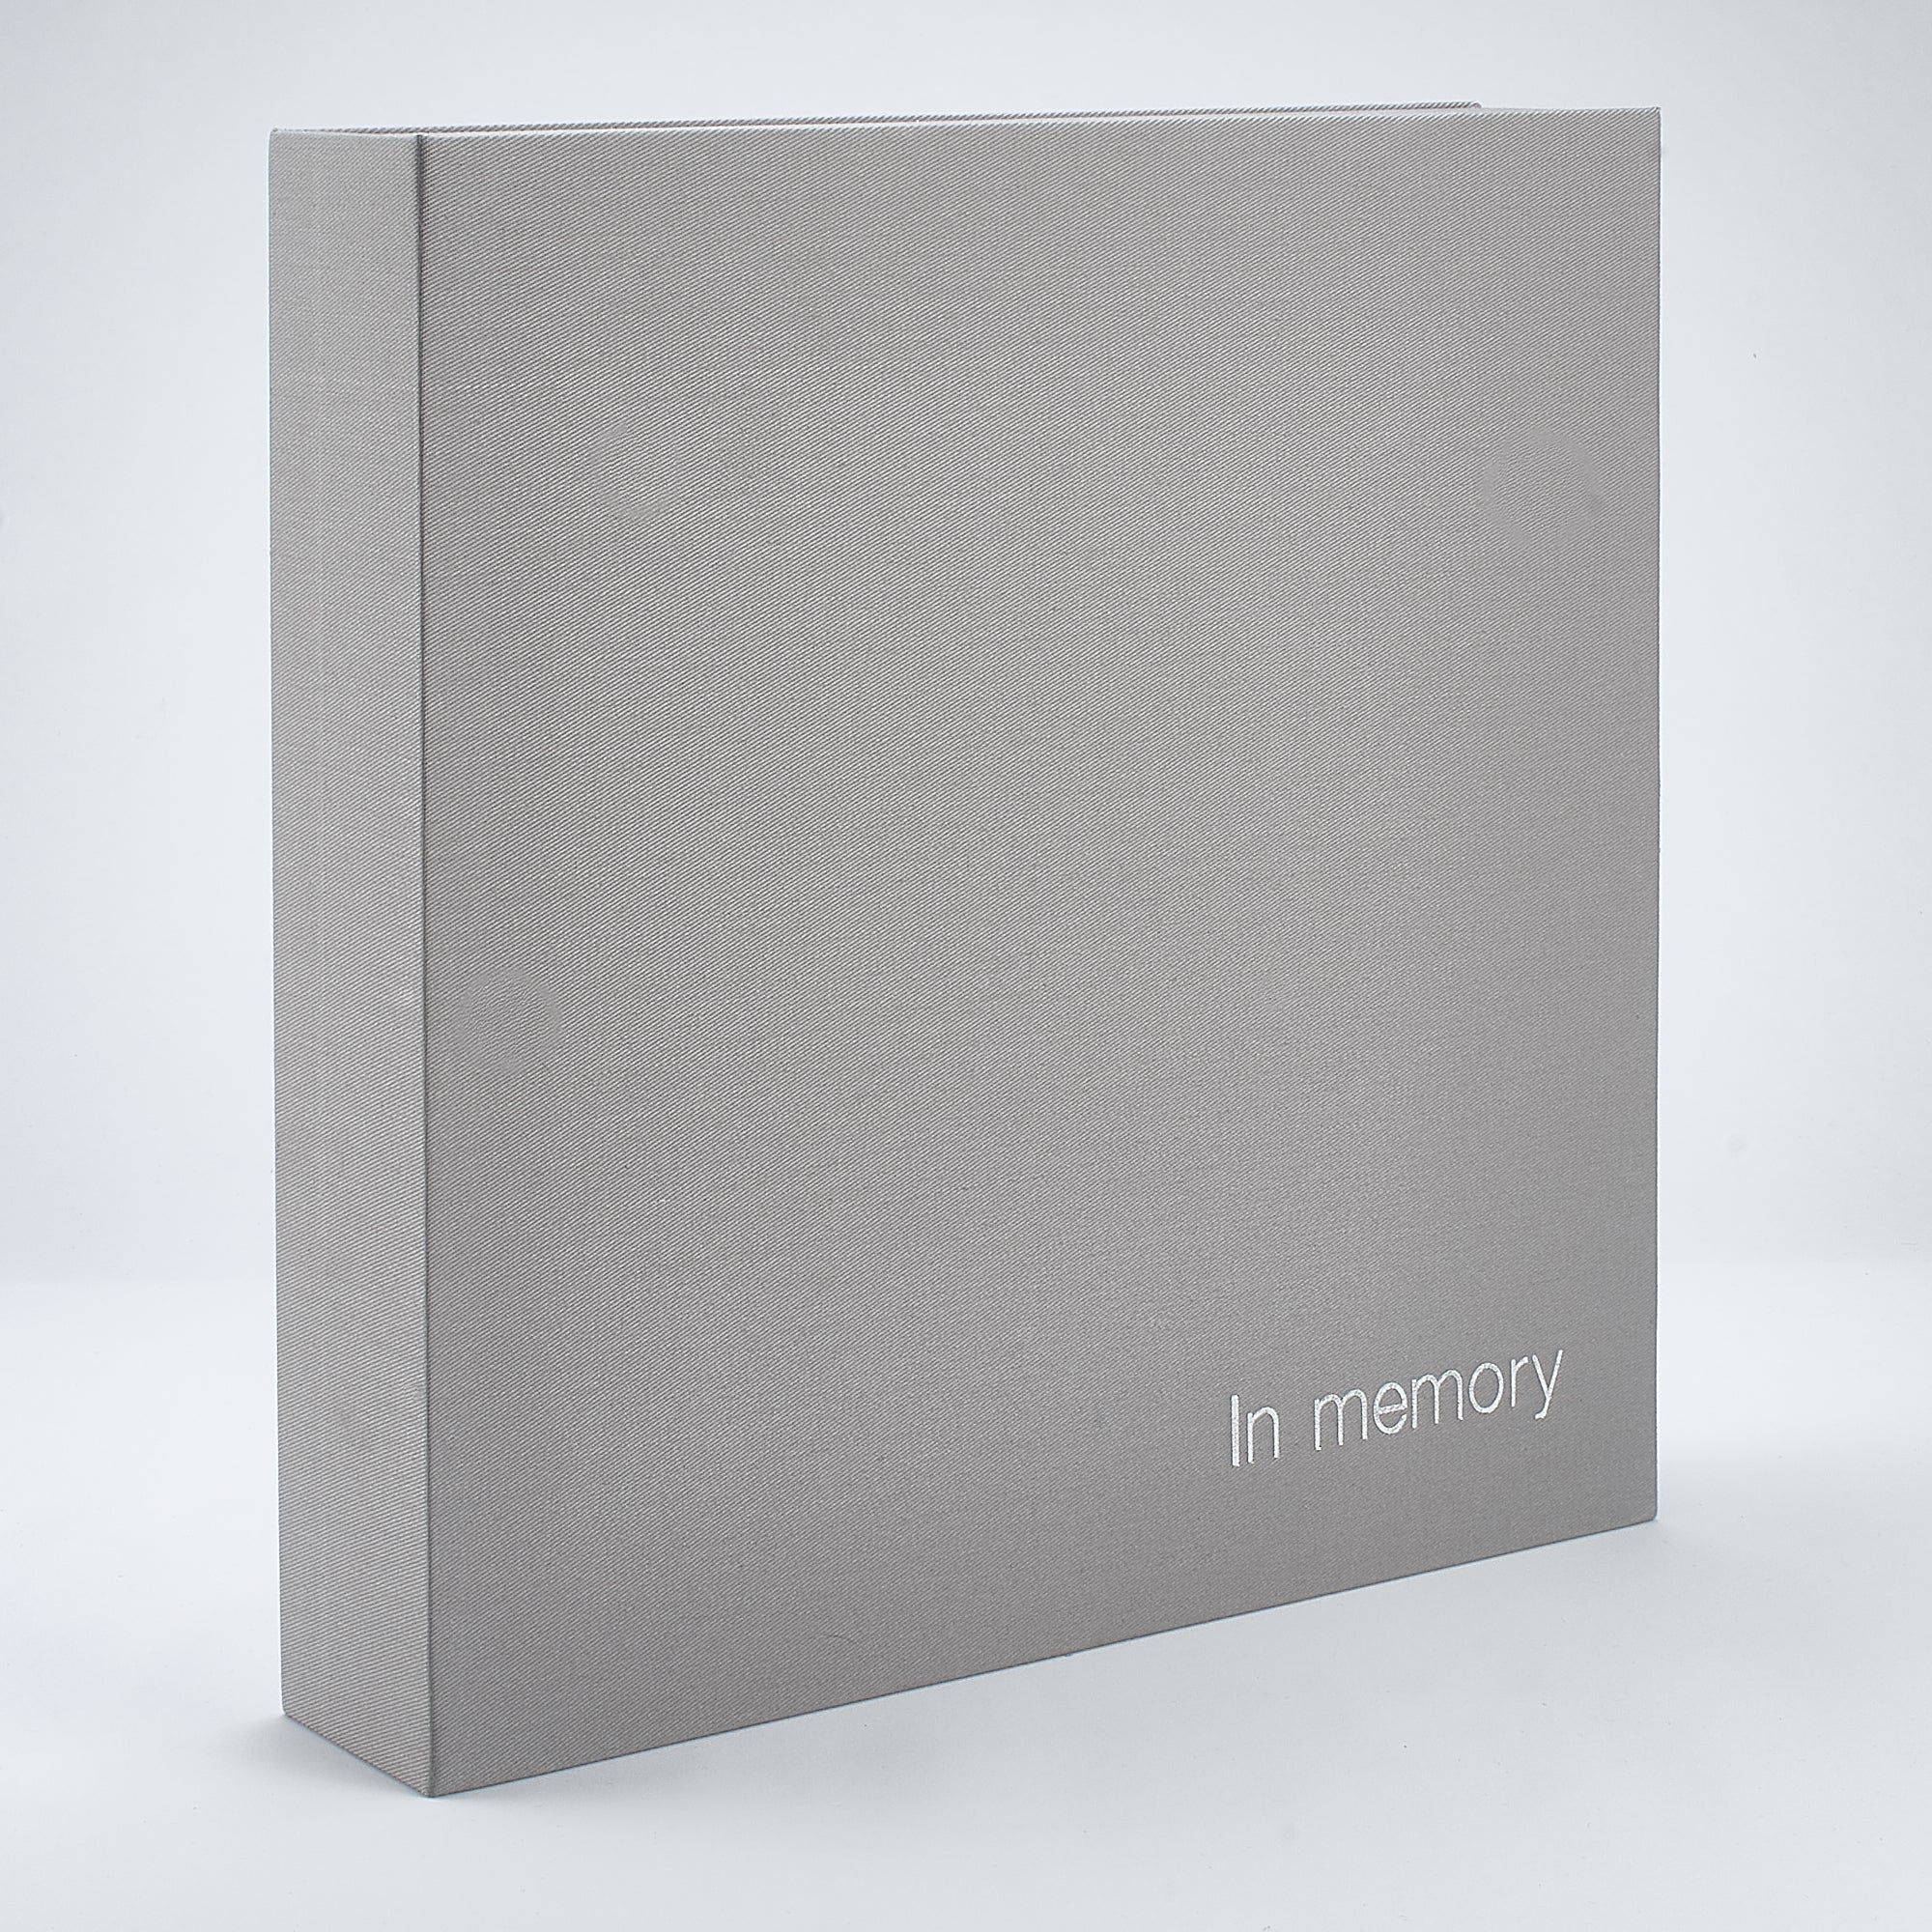 Linen 'In Memory' Book Box - Grey/Beige